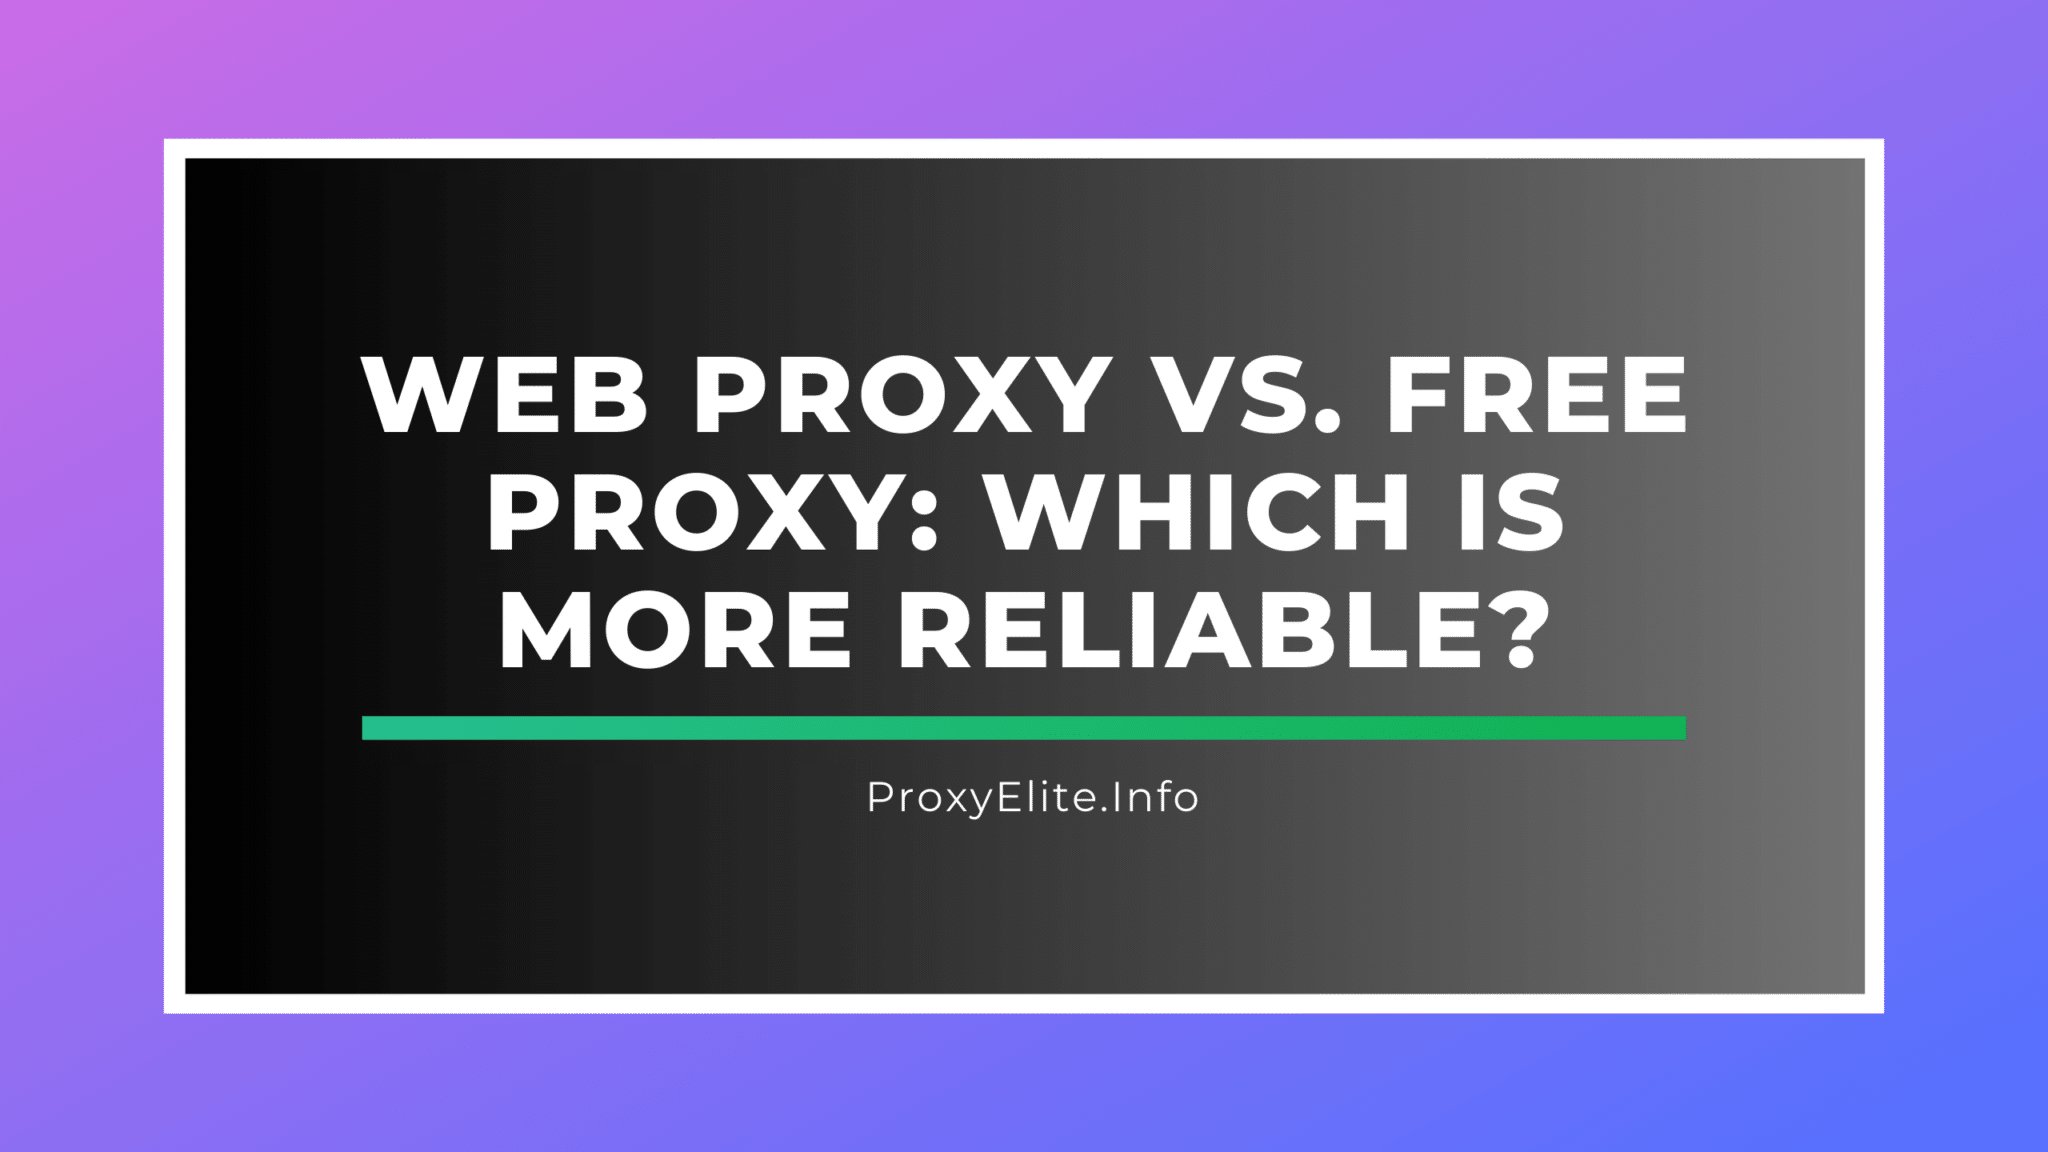 Proxy web versus proxy gratuito: ¿cuál es más confiable?